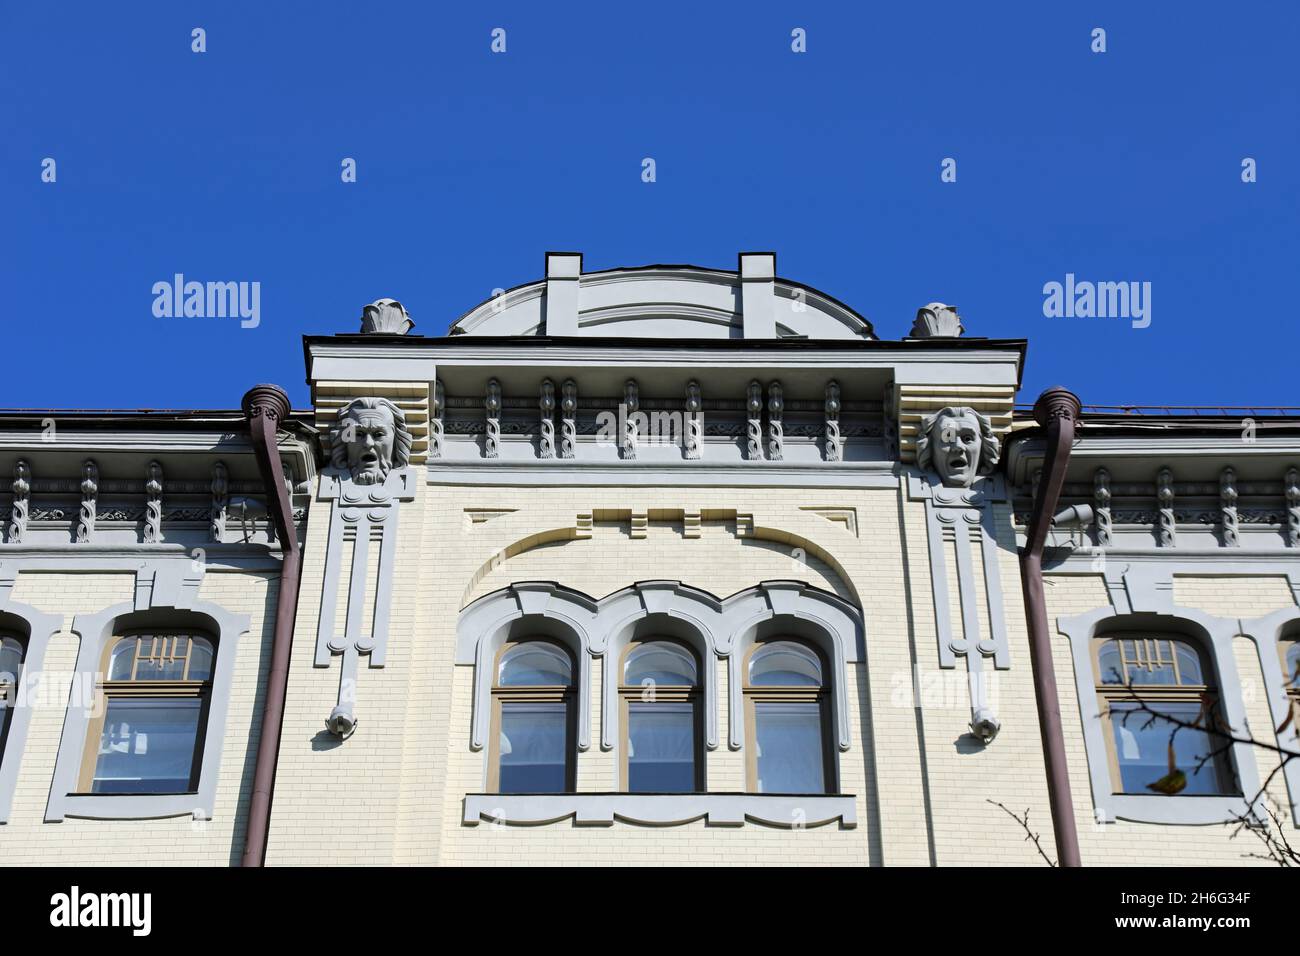 Patrimonio de arquitectura de estilo art nouveau en Kiev Foto de stock